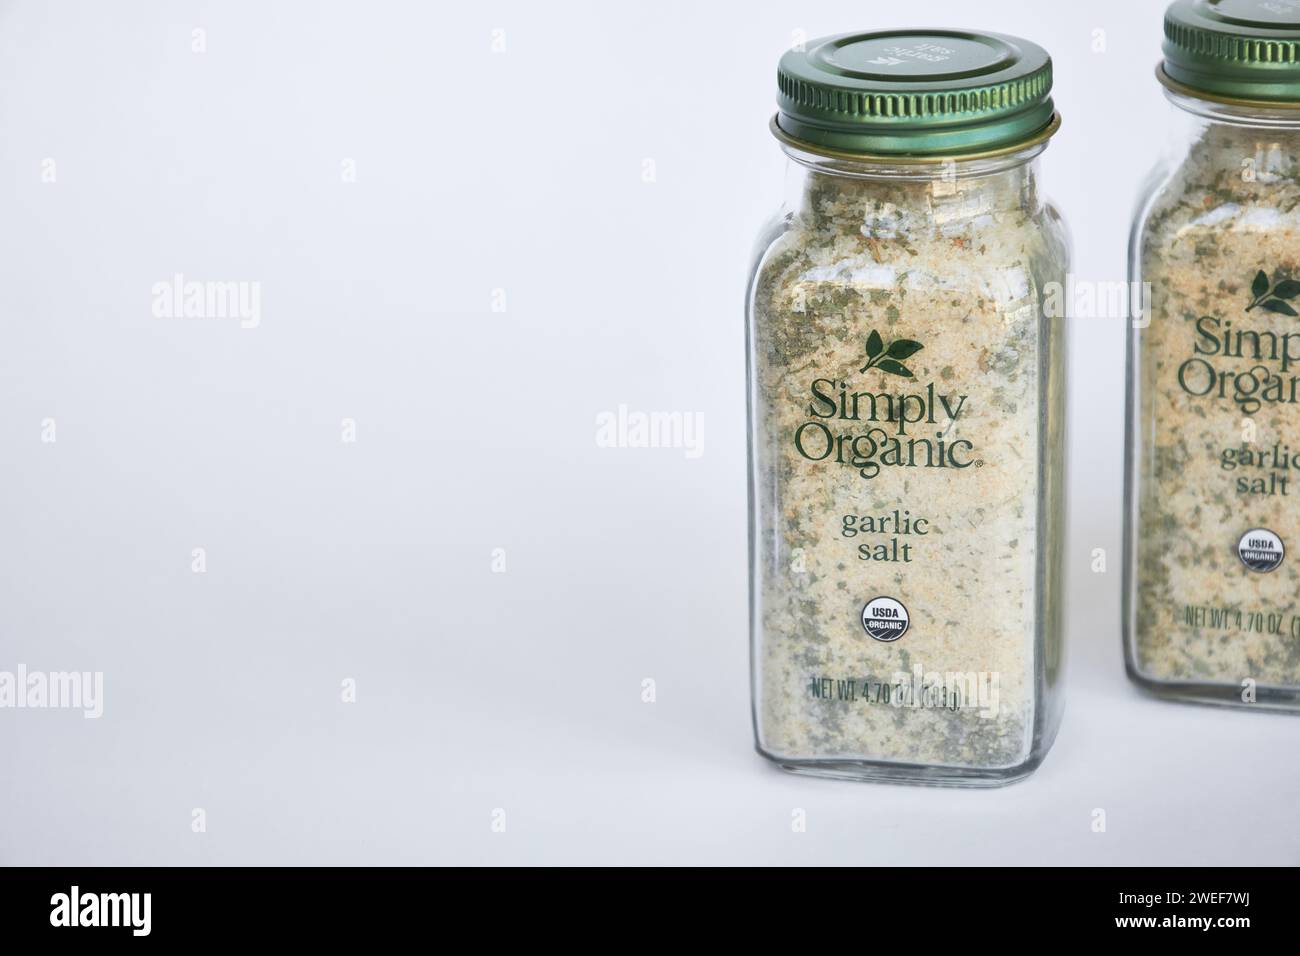 Deux pots de sel d'ail et d'épices d'assaisonnement aux herbes, marque Simply Organic. Récipient en verre avec couvercle en aluminium vert, emballage recyclable. IHerb en ligne Banque D'Images